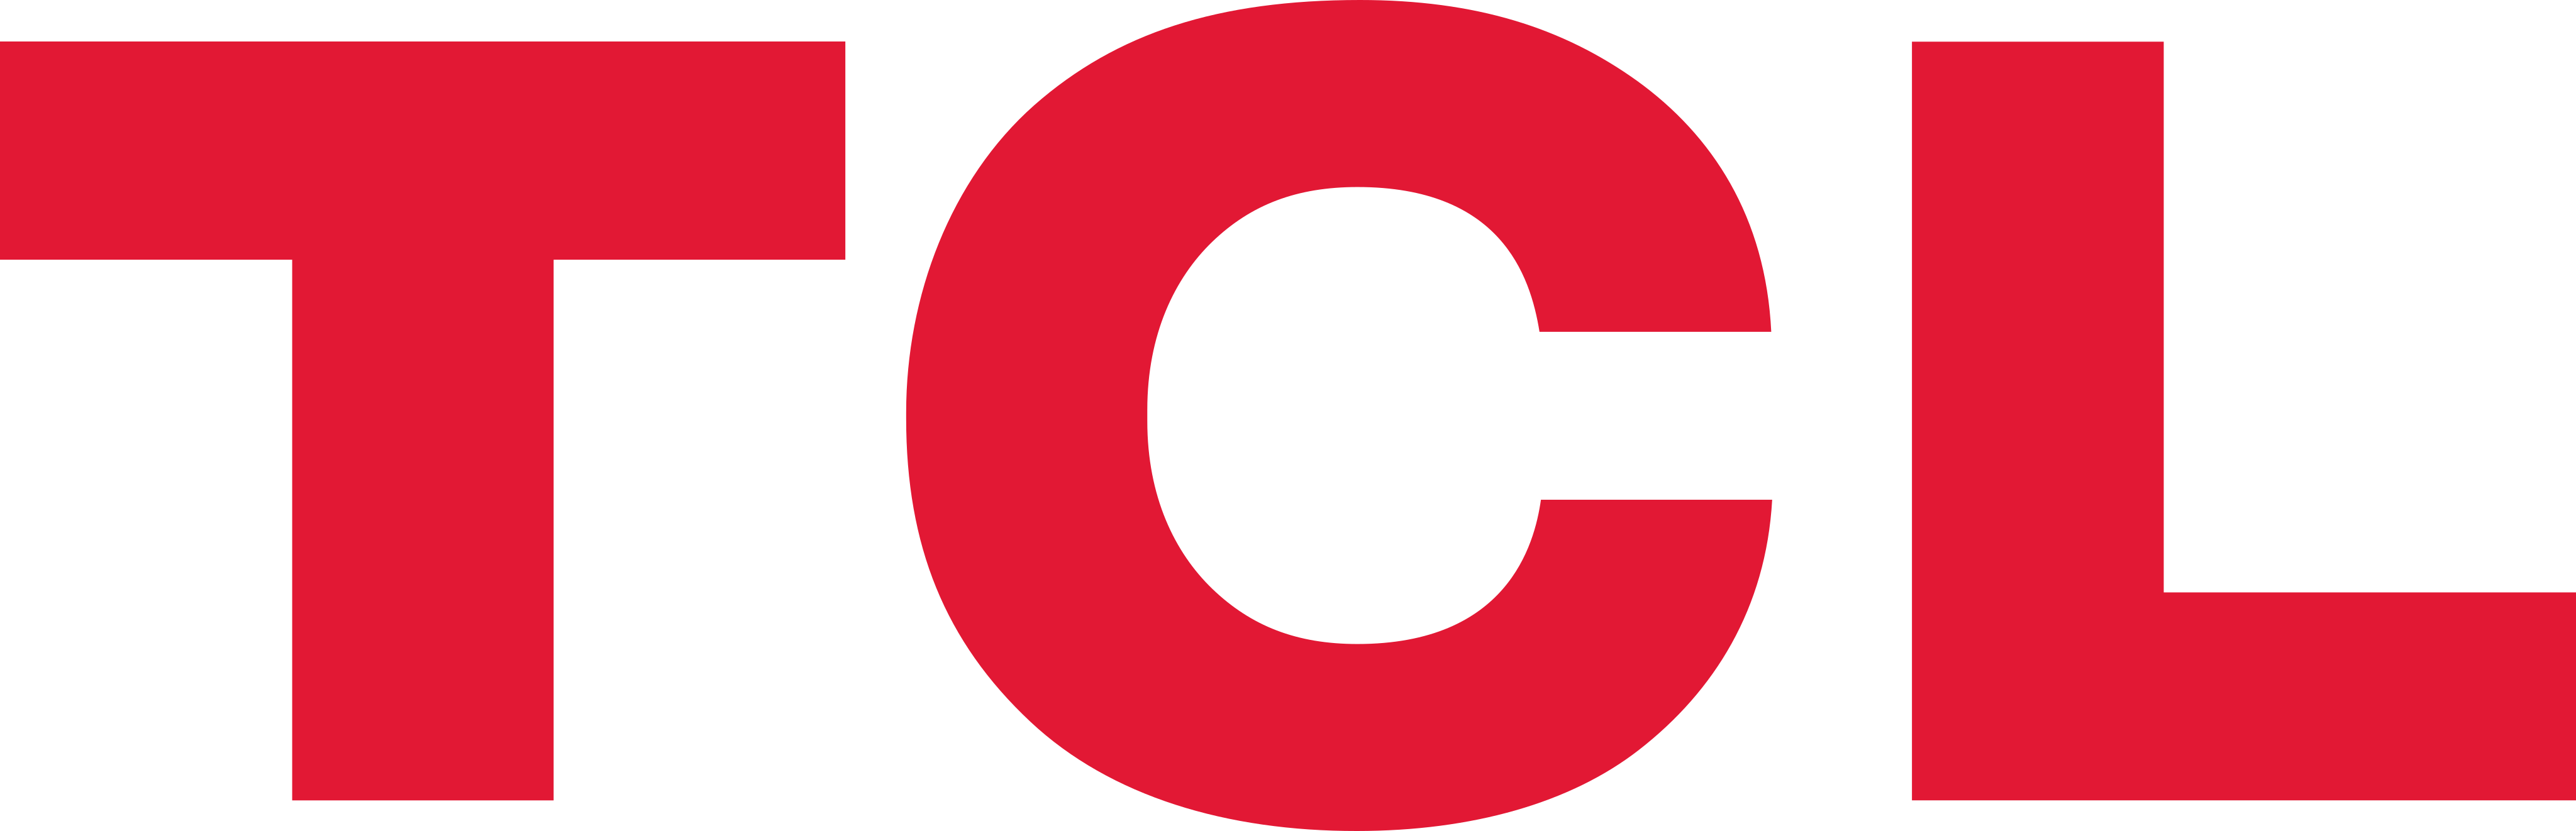 tcl-logo-1